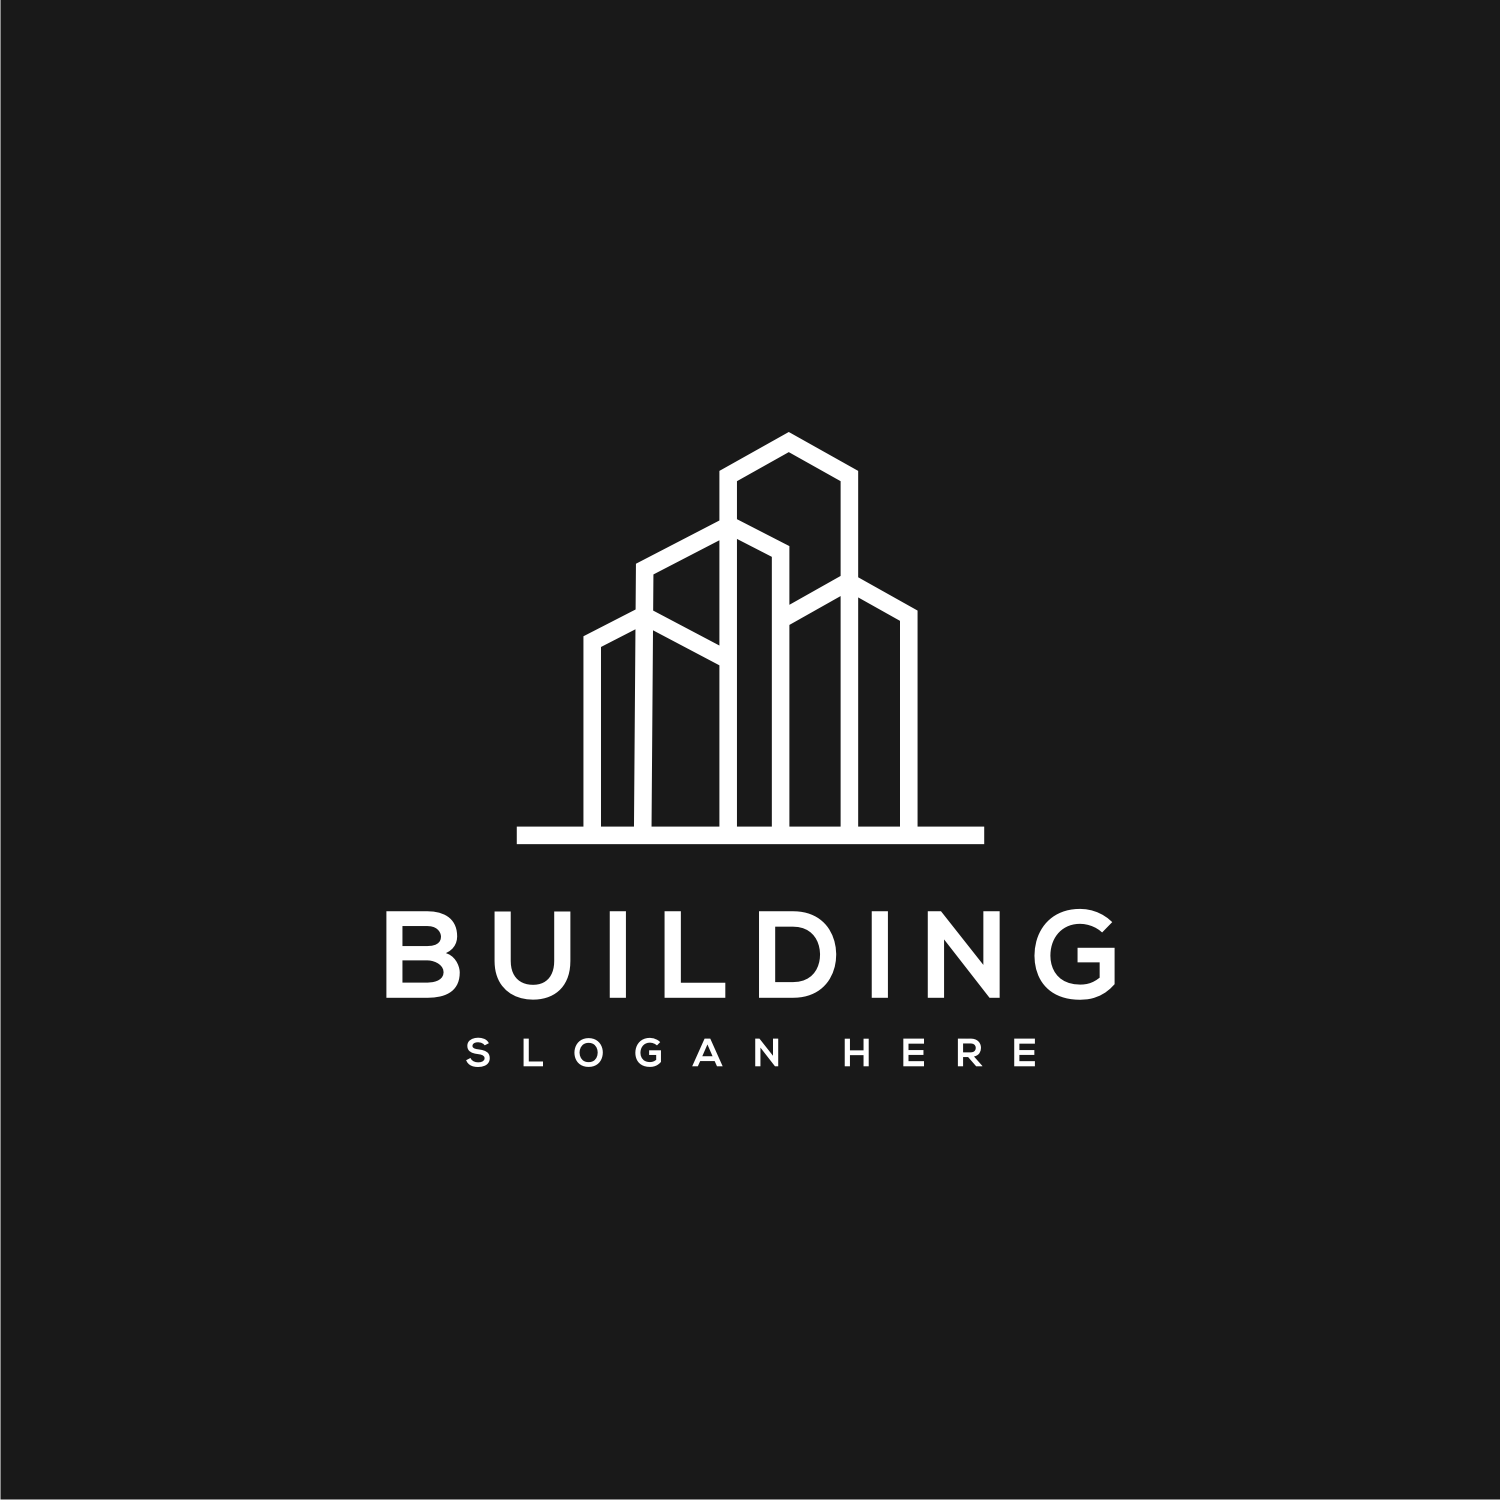 Building Real Estate Logo Vector Design previews.